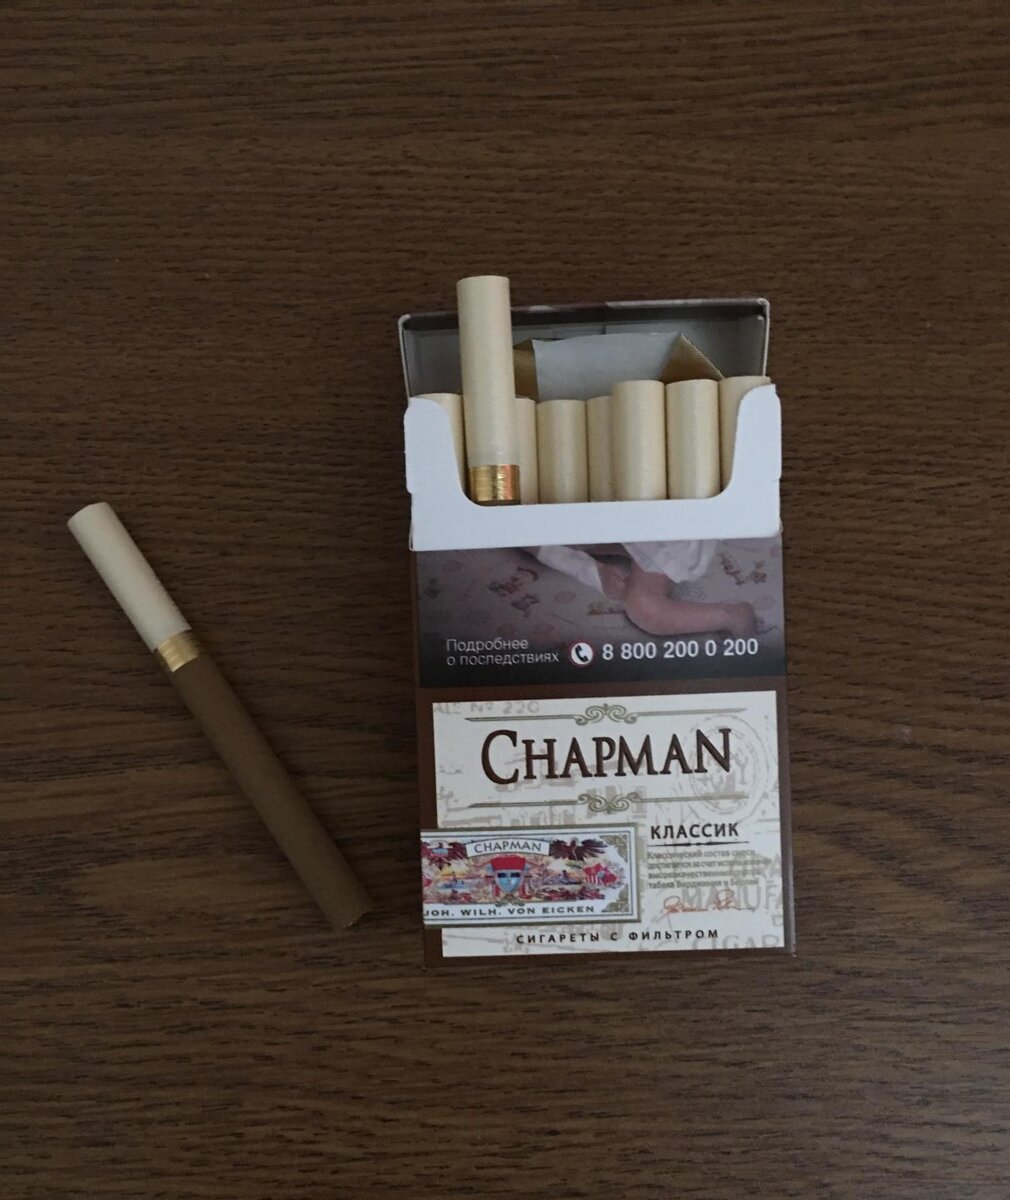 Виды сигарет чапман. Сигареты Чапман Браун тонкие. Чапмен сигареты Классик. Chapman сигареты вкусы Браун. Чапман сигареты класси.